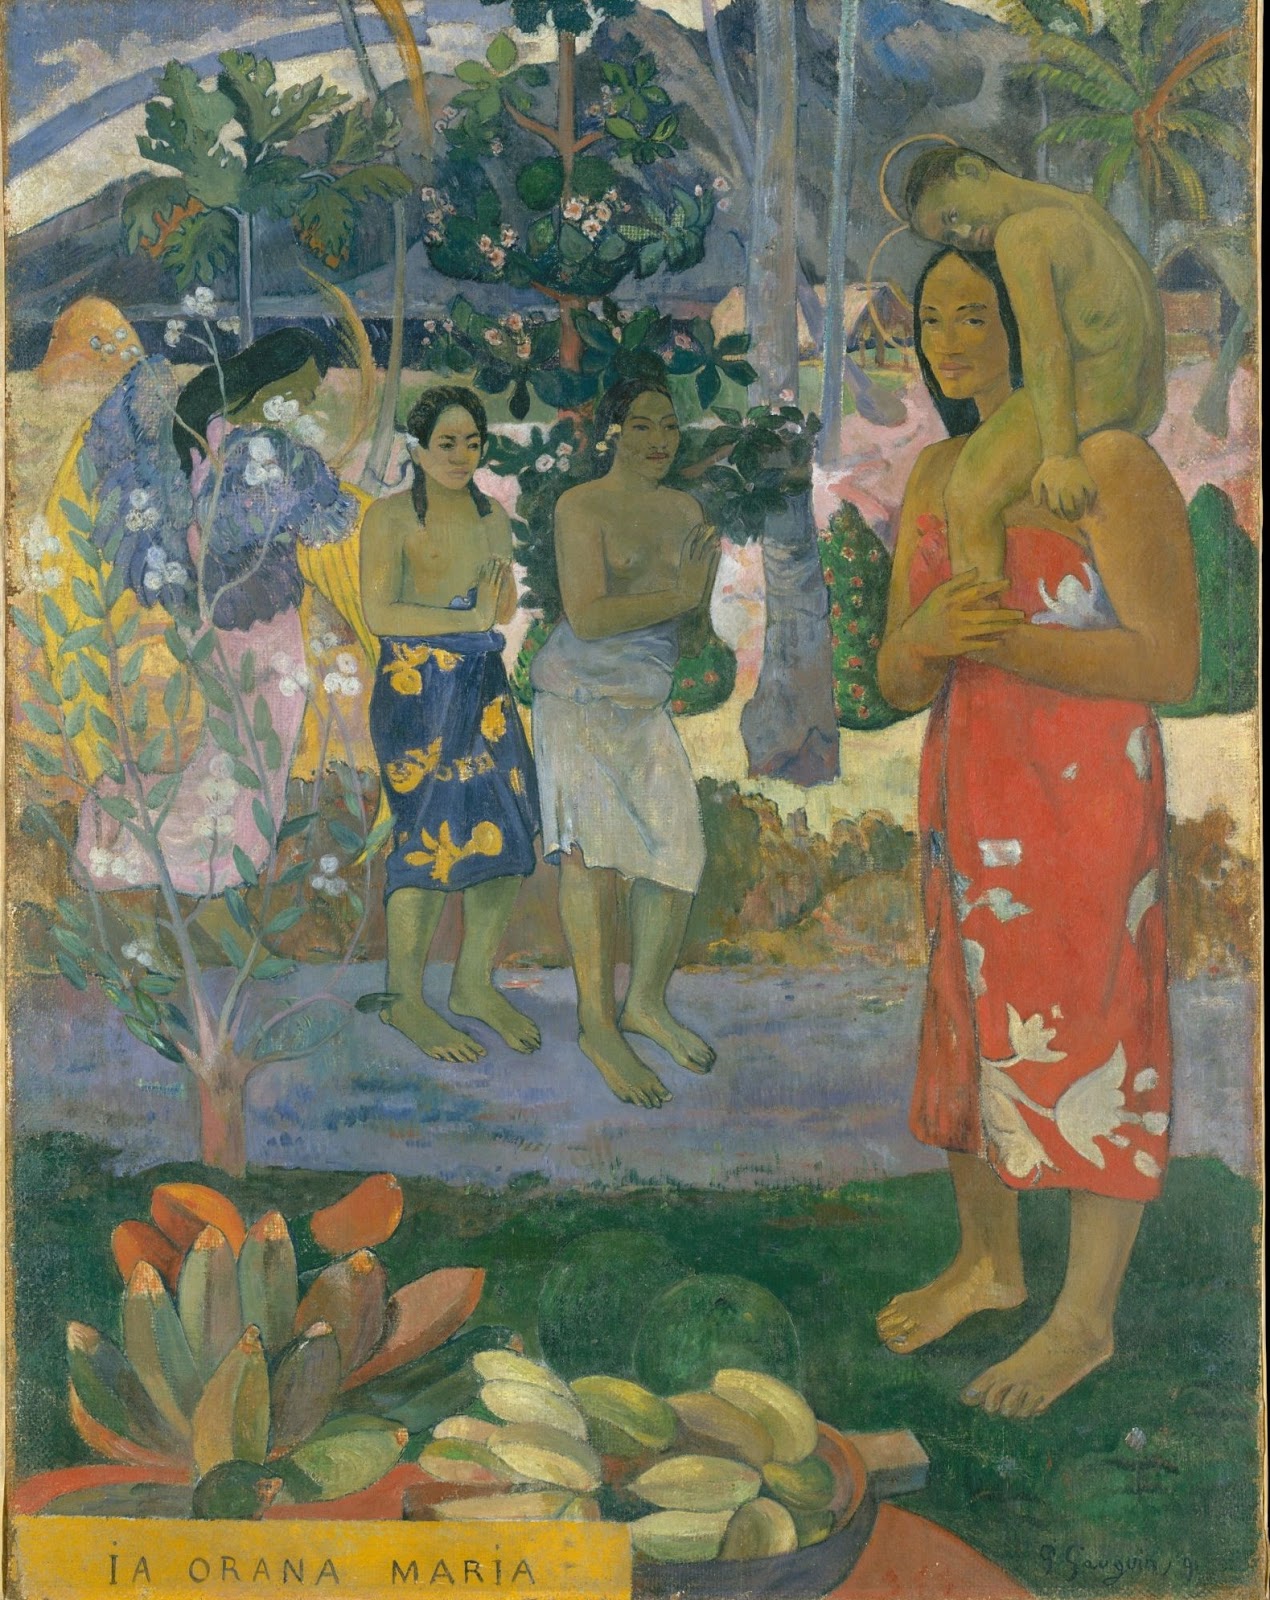 Paul+Gauguin-1848-1903 (405).jpg